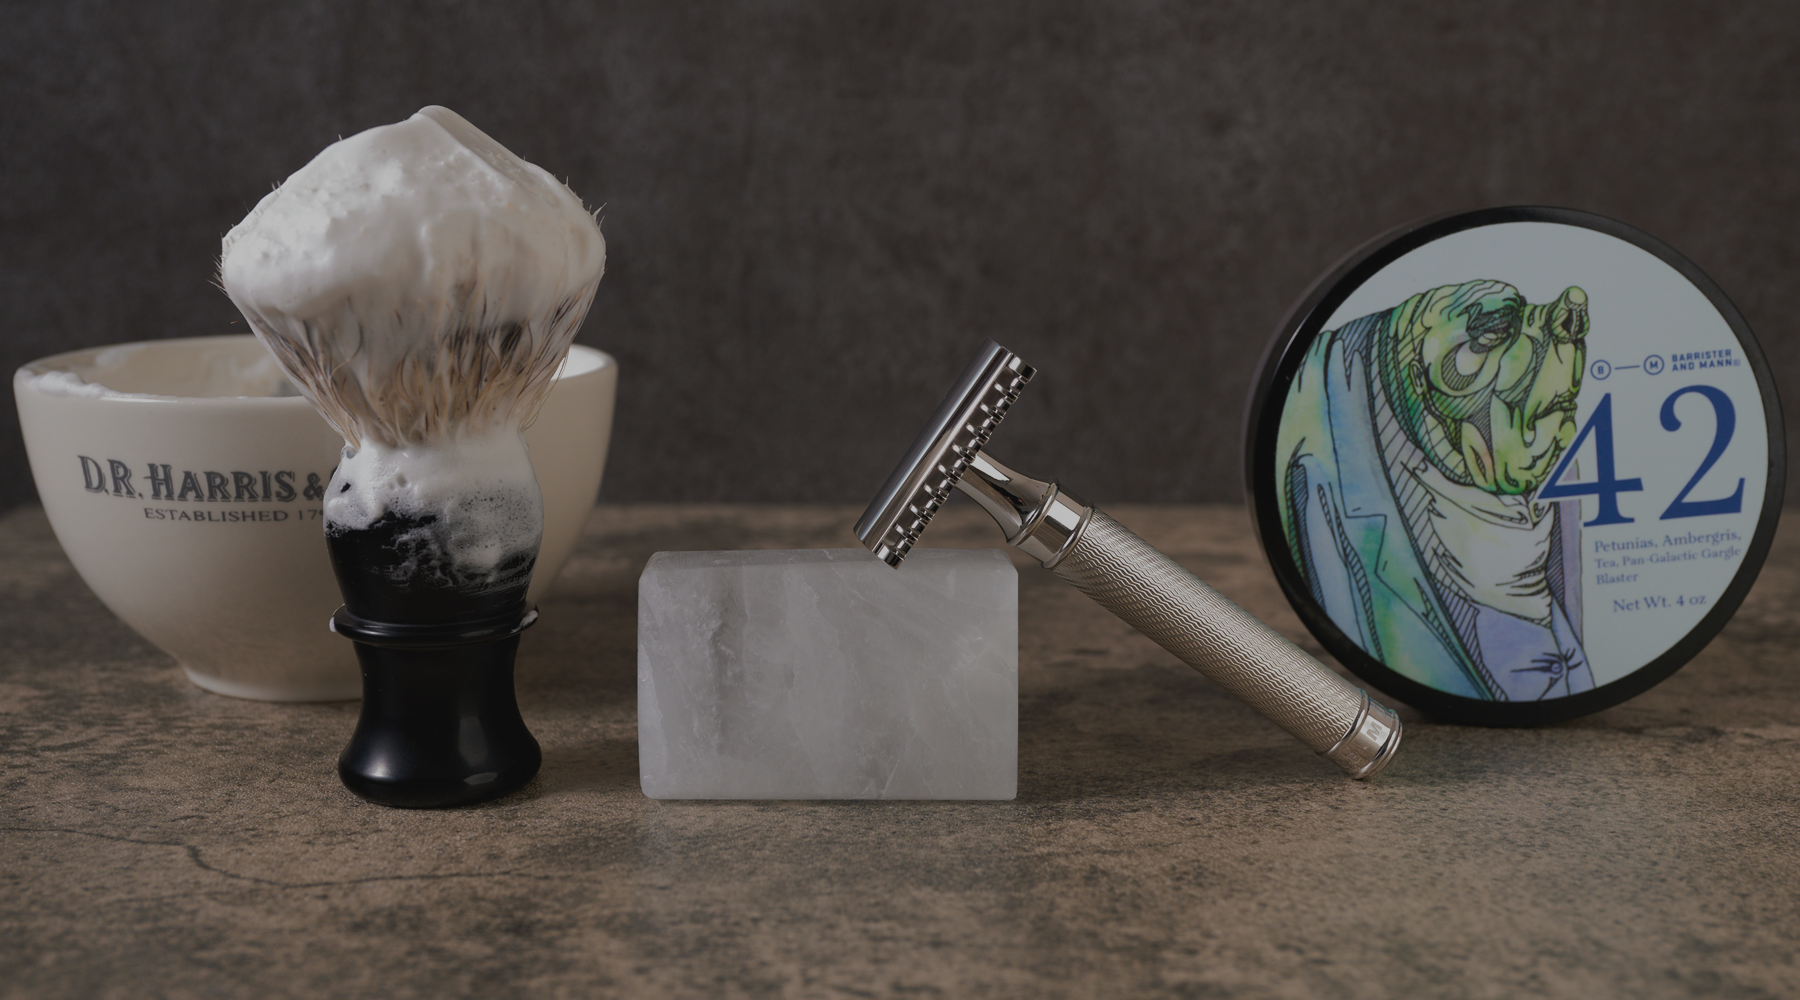 Shaving alum Stone block for after shaving(100gm)(Pack of 1) - Best Razor  for man